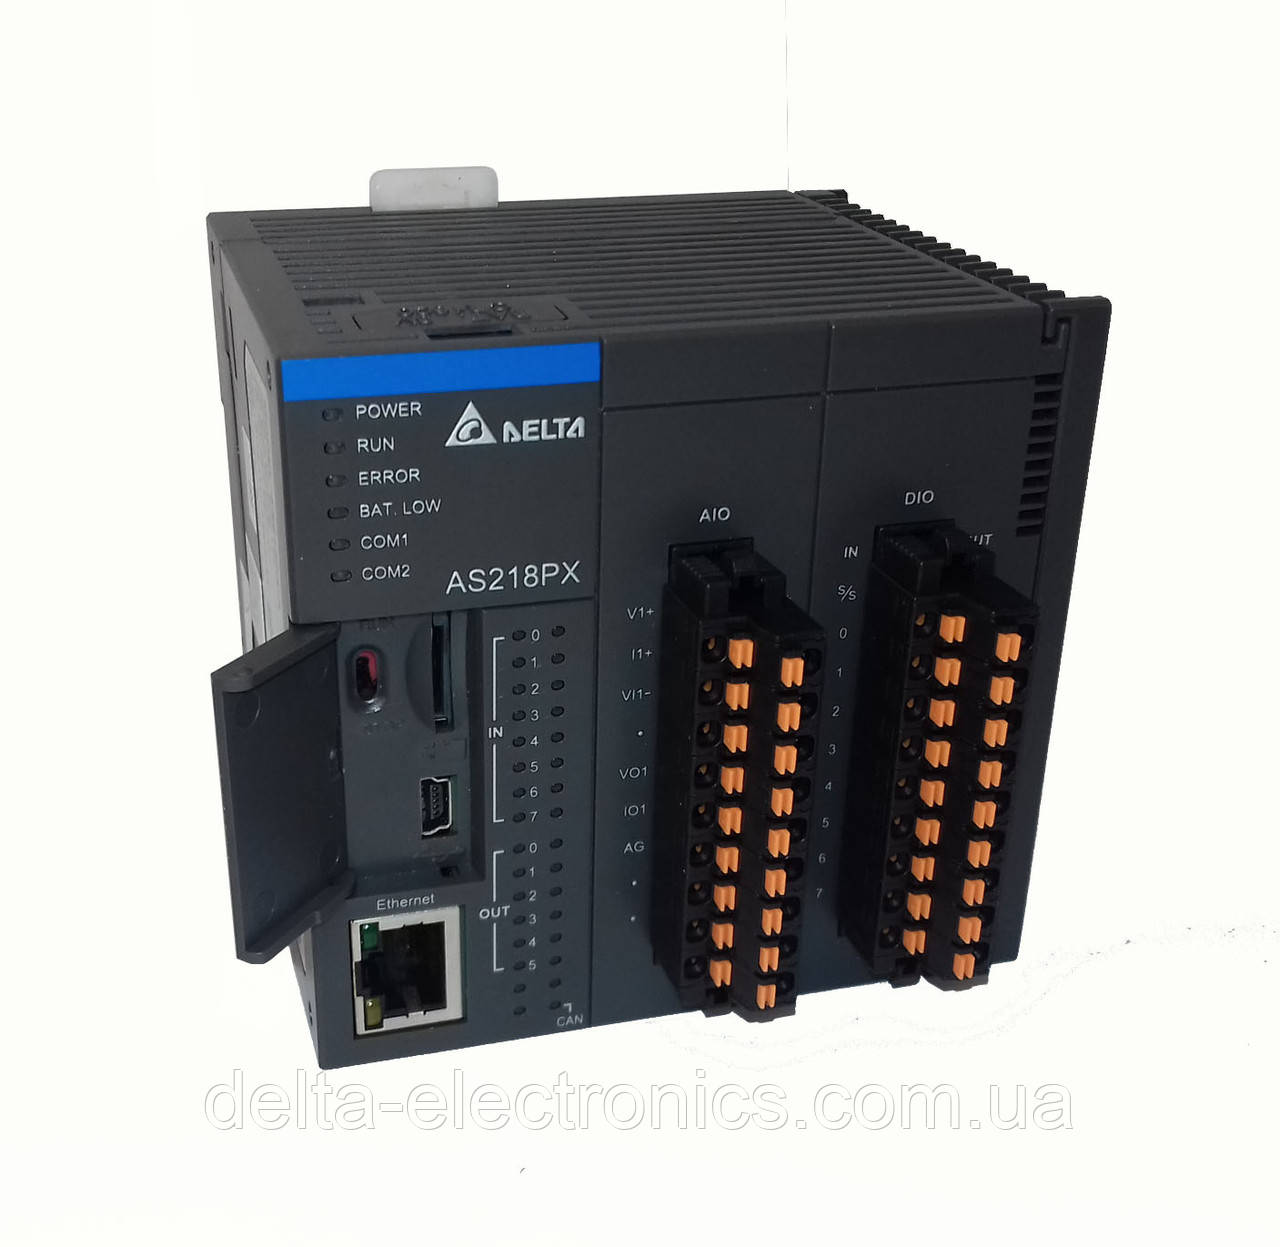 Базовий модуль контролера серії AS200 Delta Electronics, 8DI/6DO транзисторні виходи, 2AI/2AO, Ethernet, фото 1